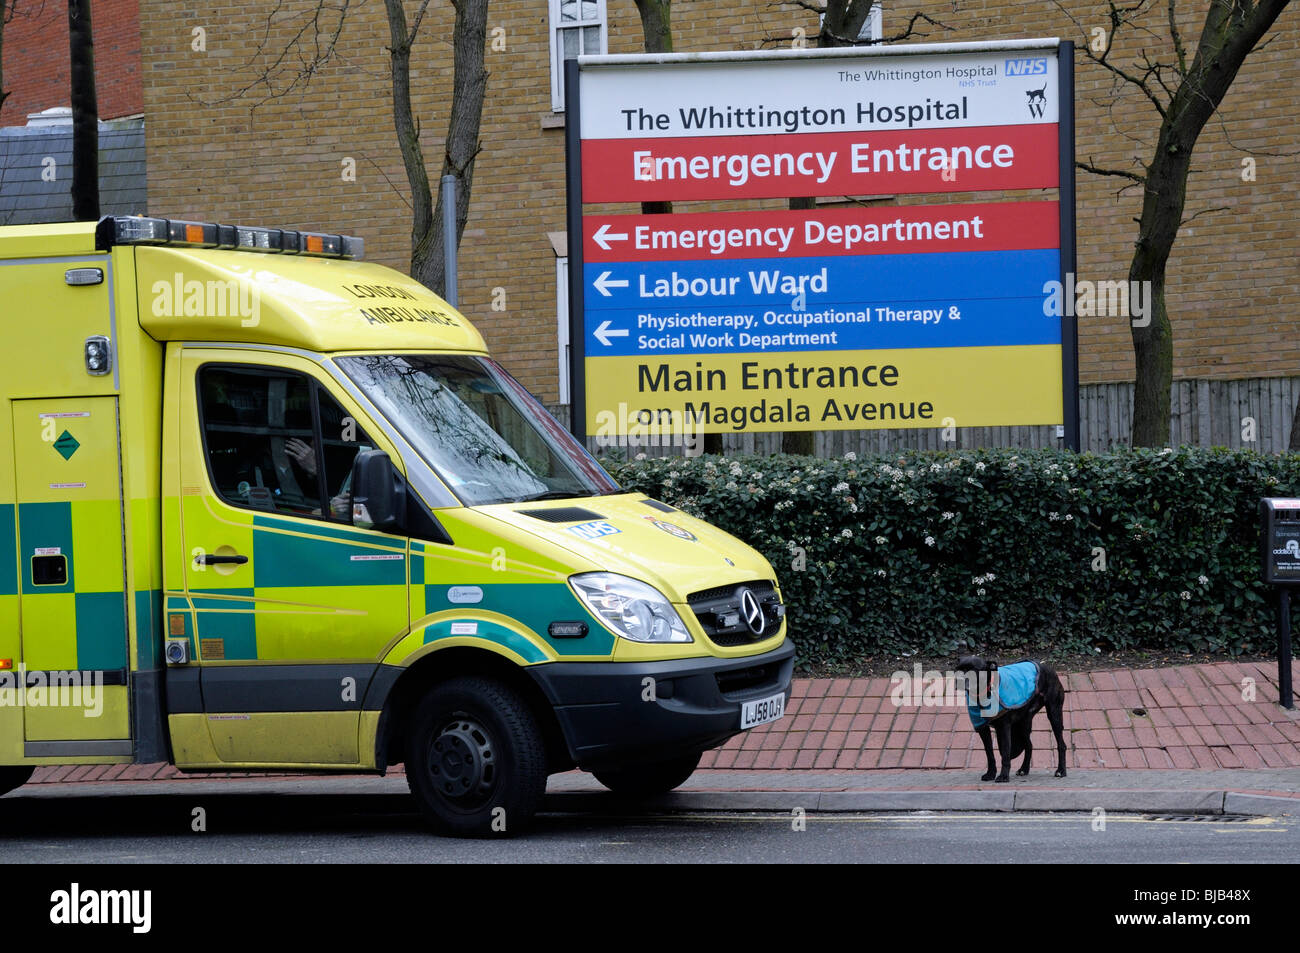 Ambulanza parcheggiato all'entrata Whittington Ospedale con piccolo cane sul marciapiede Archway Londra Inghilterra Gran Bretagna REGNO UNITO Foto Stock